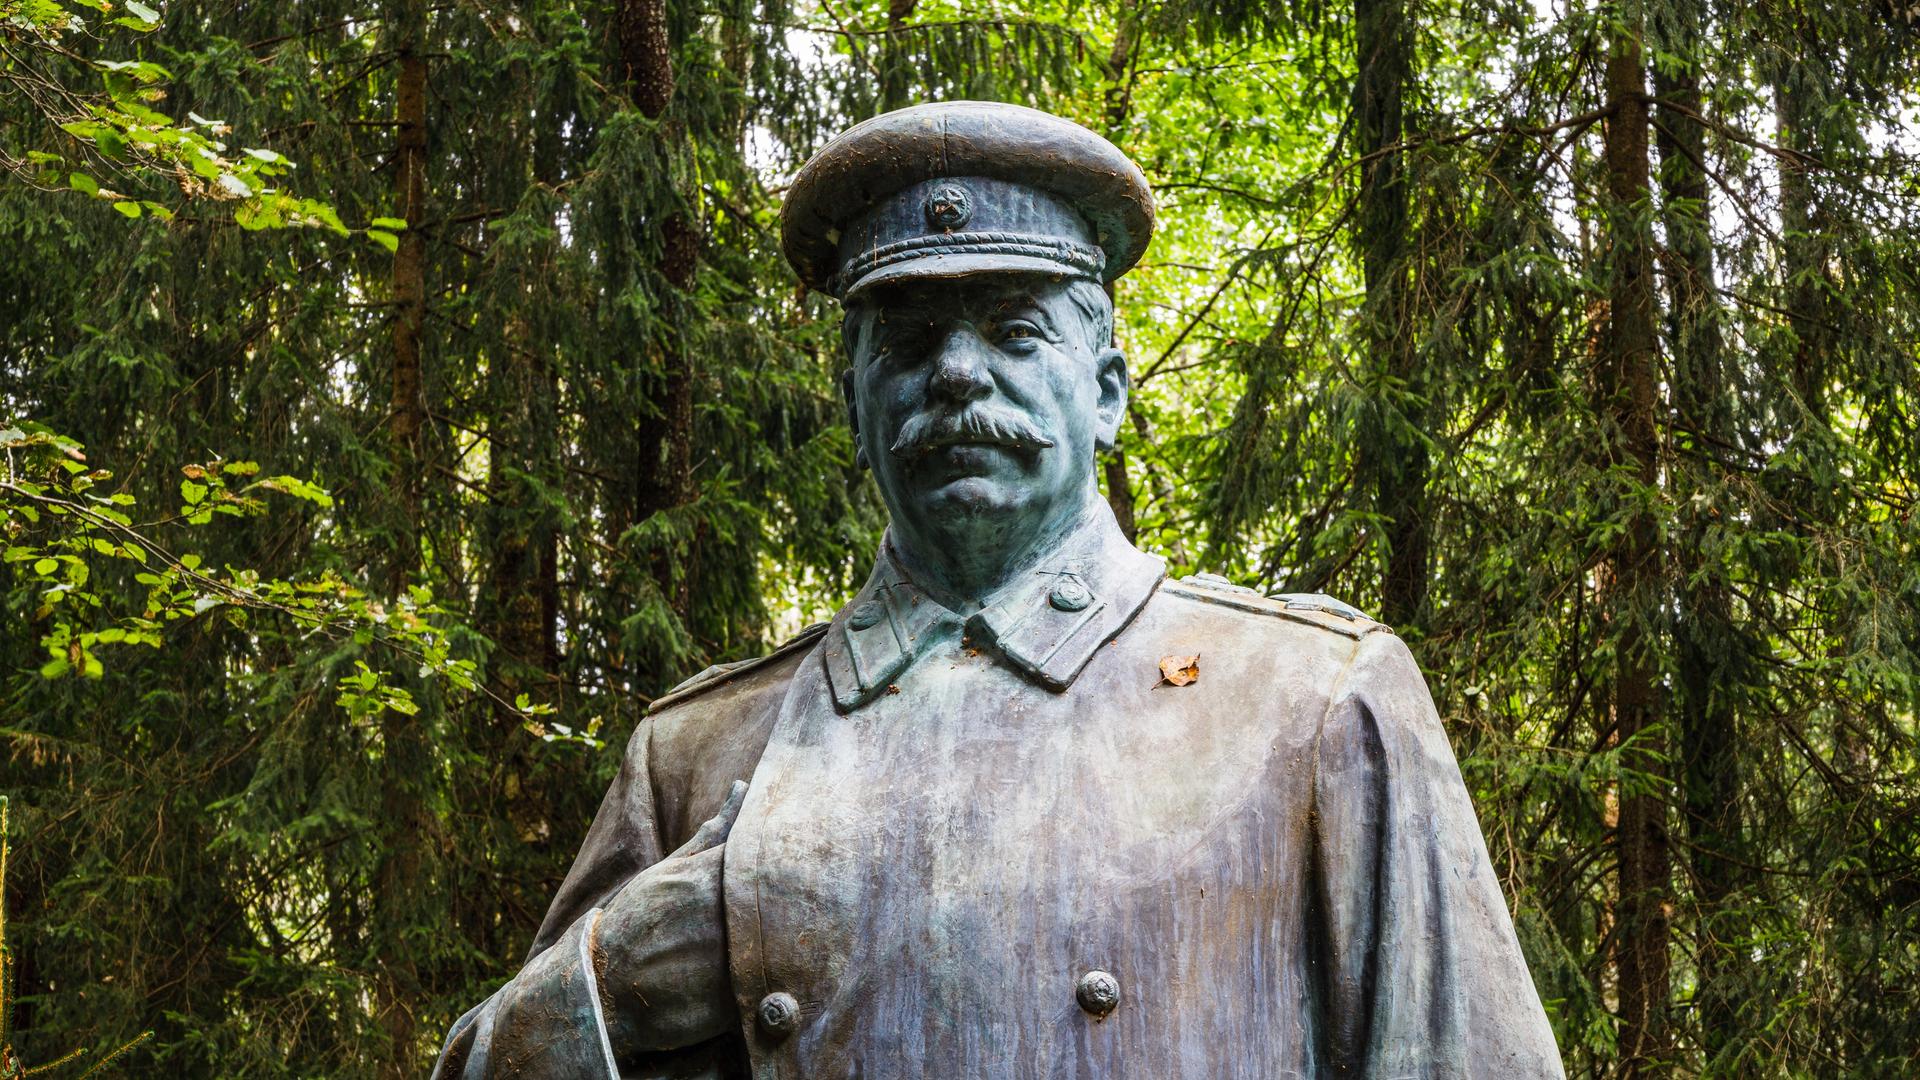 Stalin-Denkmal in einem litauischen Park, in dem Skulpturen aus der sowjetischen Besatzungszeit ausgestellt werden. Auf Tafeln werden die abgebildeten Personen vorgestellt und ihre Taten benannt.